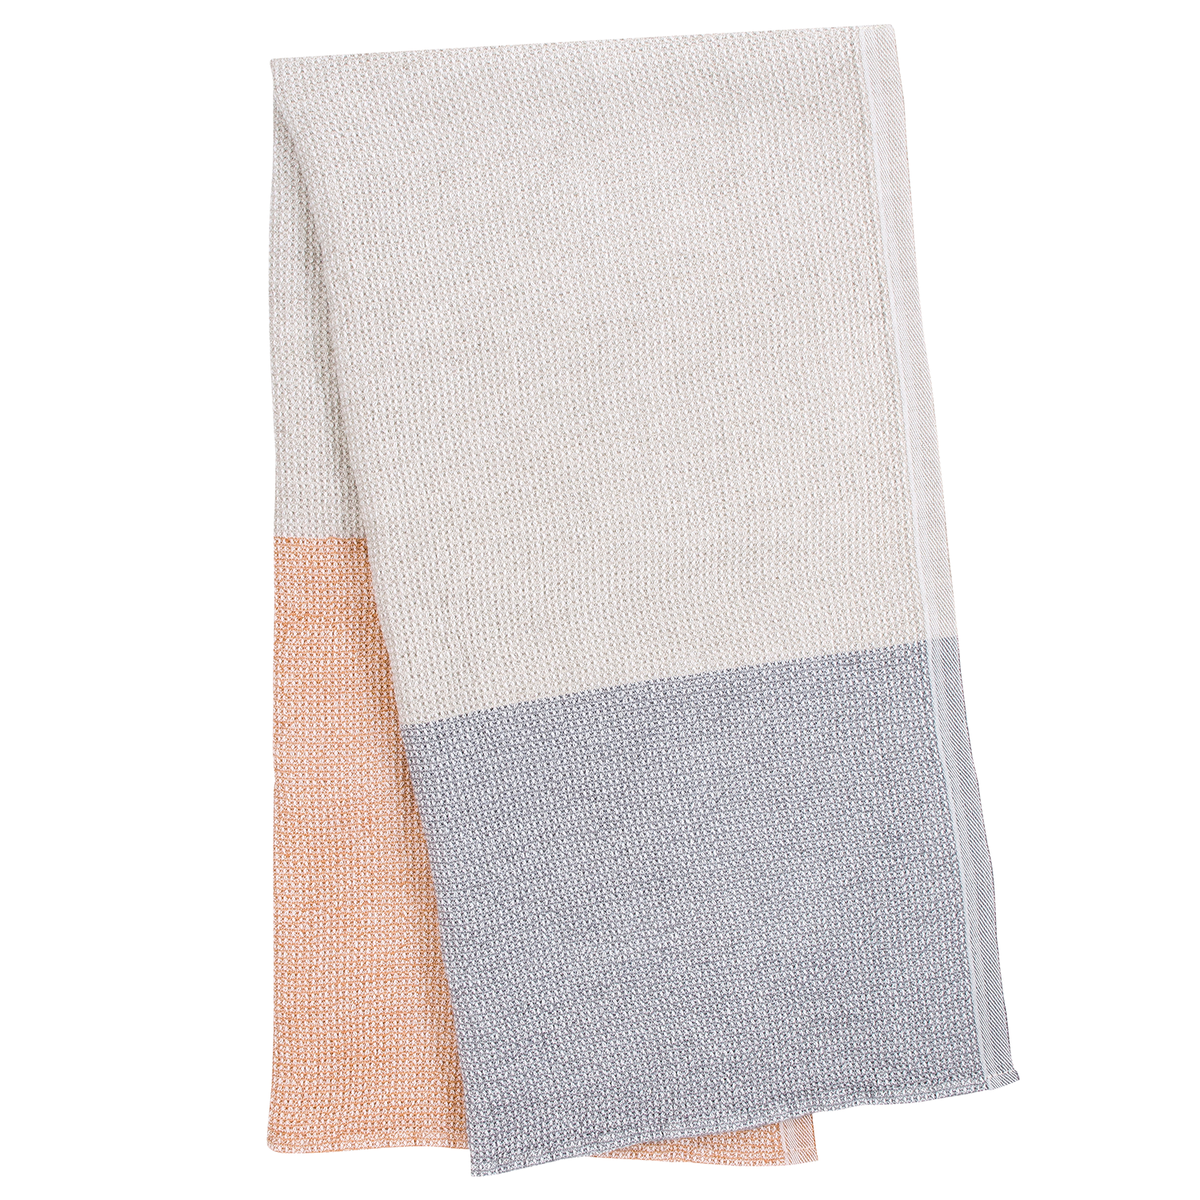 Lapuan Kankurit Maija Tea Towel | NØRDIK White-Cinnamon